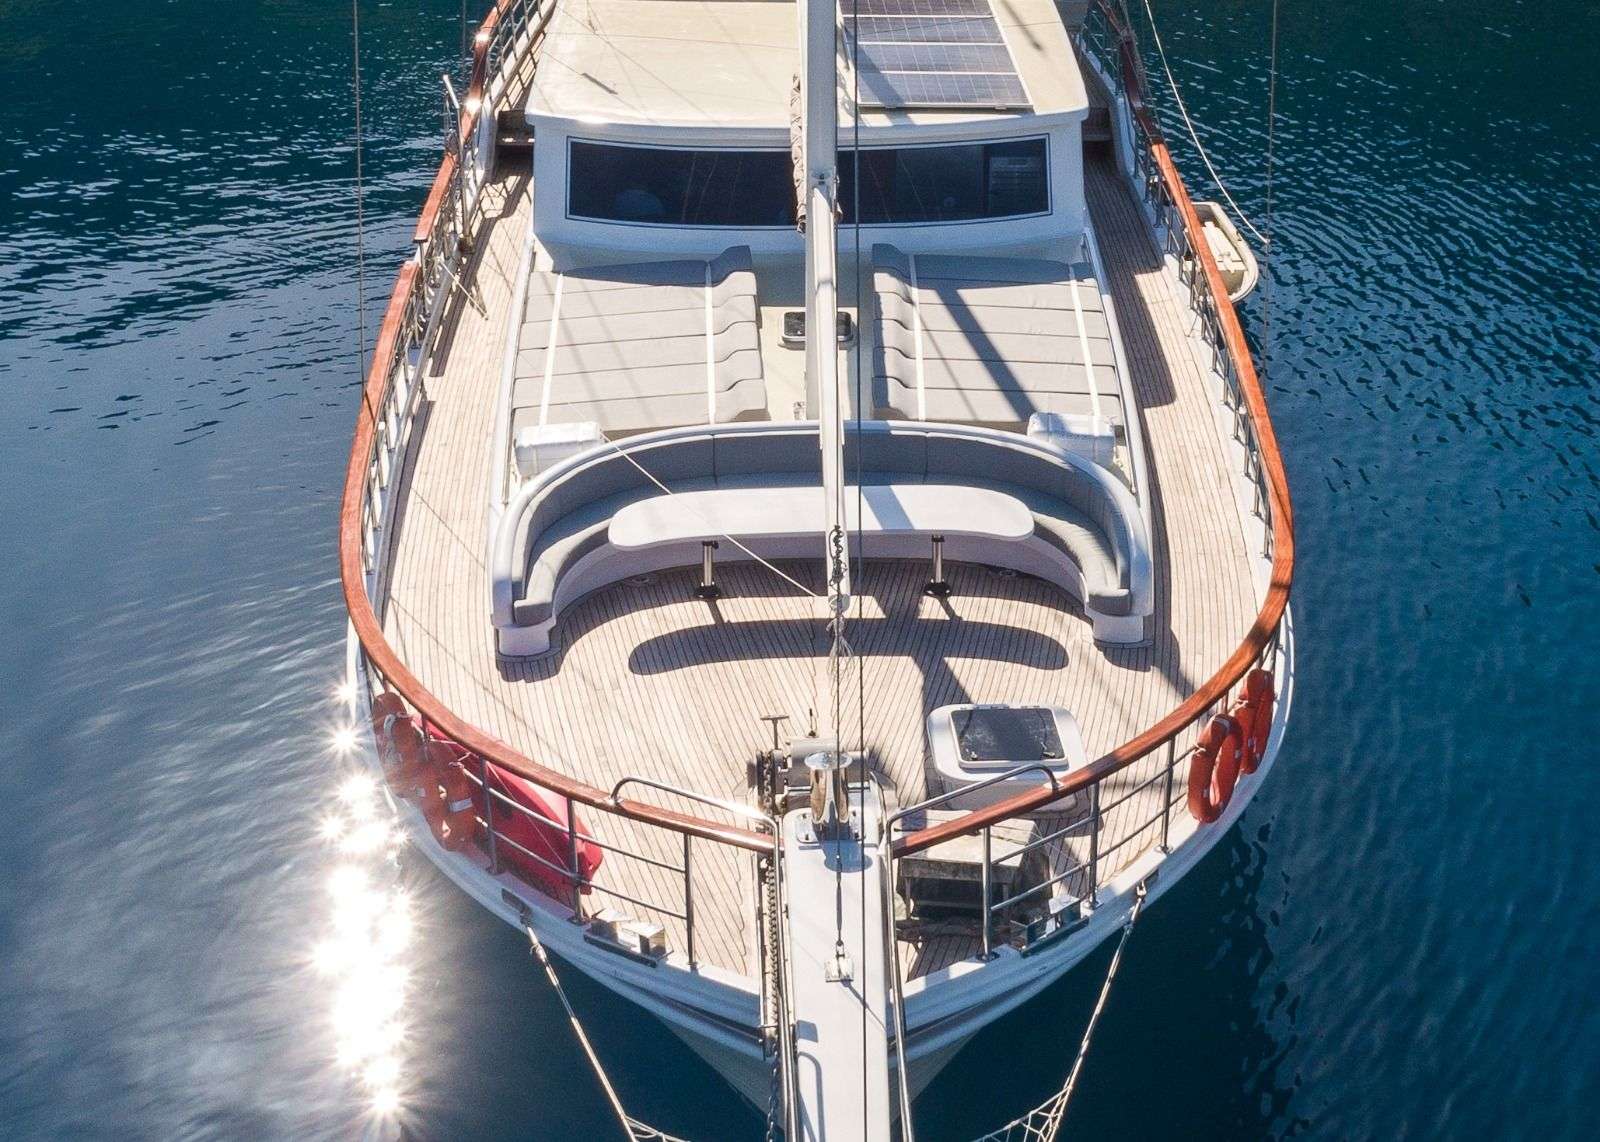 koray ege - Yacht Charter Skopelos & Boat hire in Greece & Turkey 6